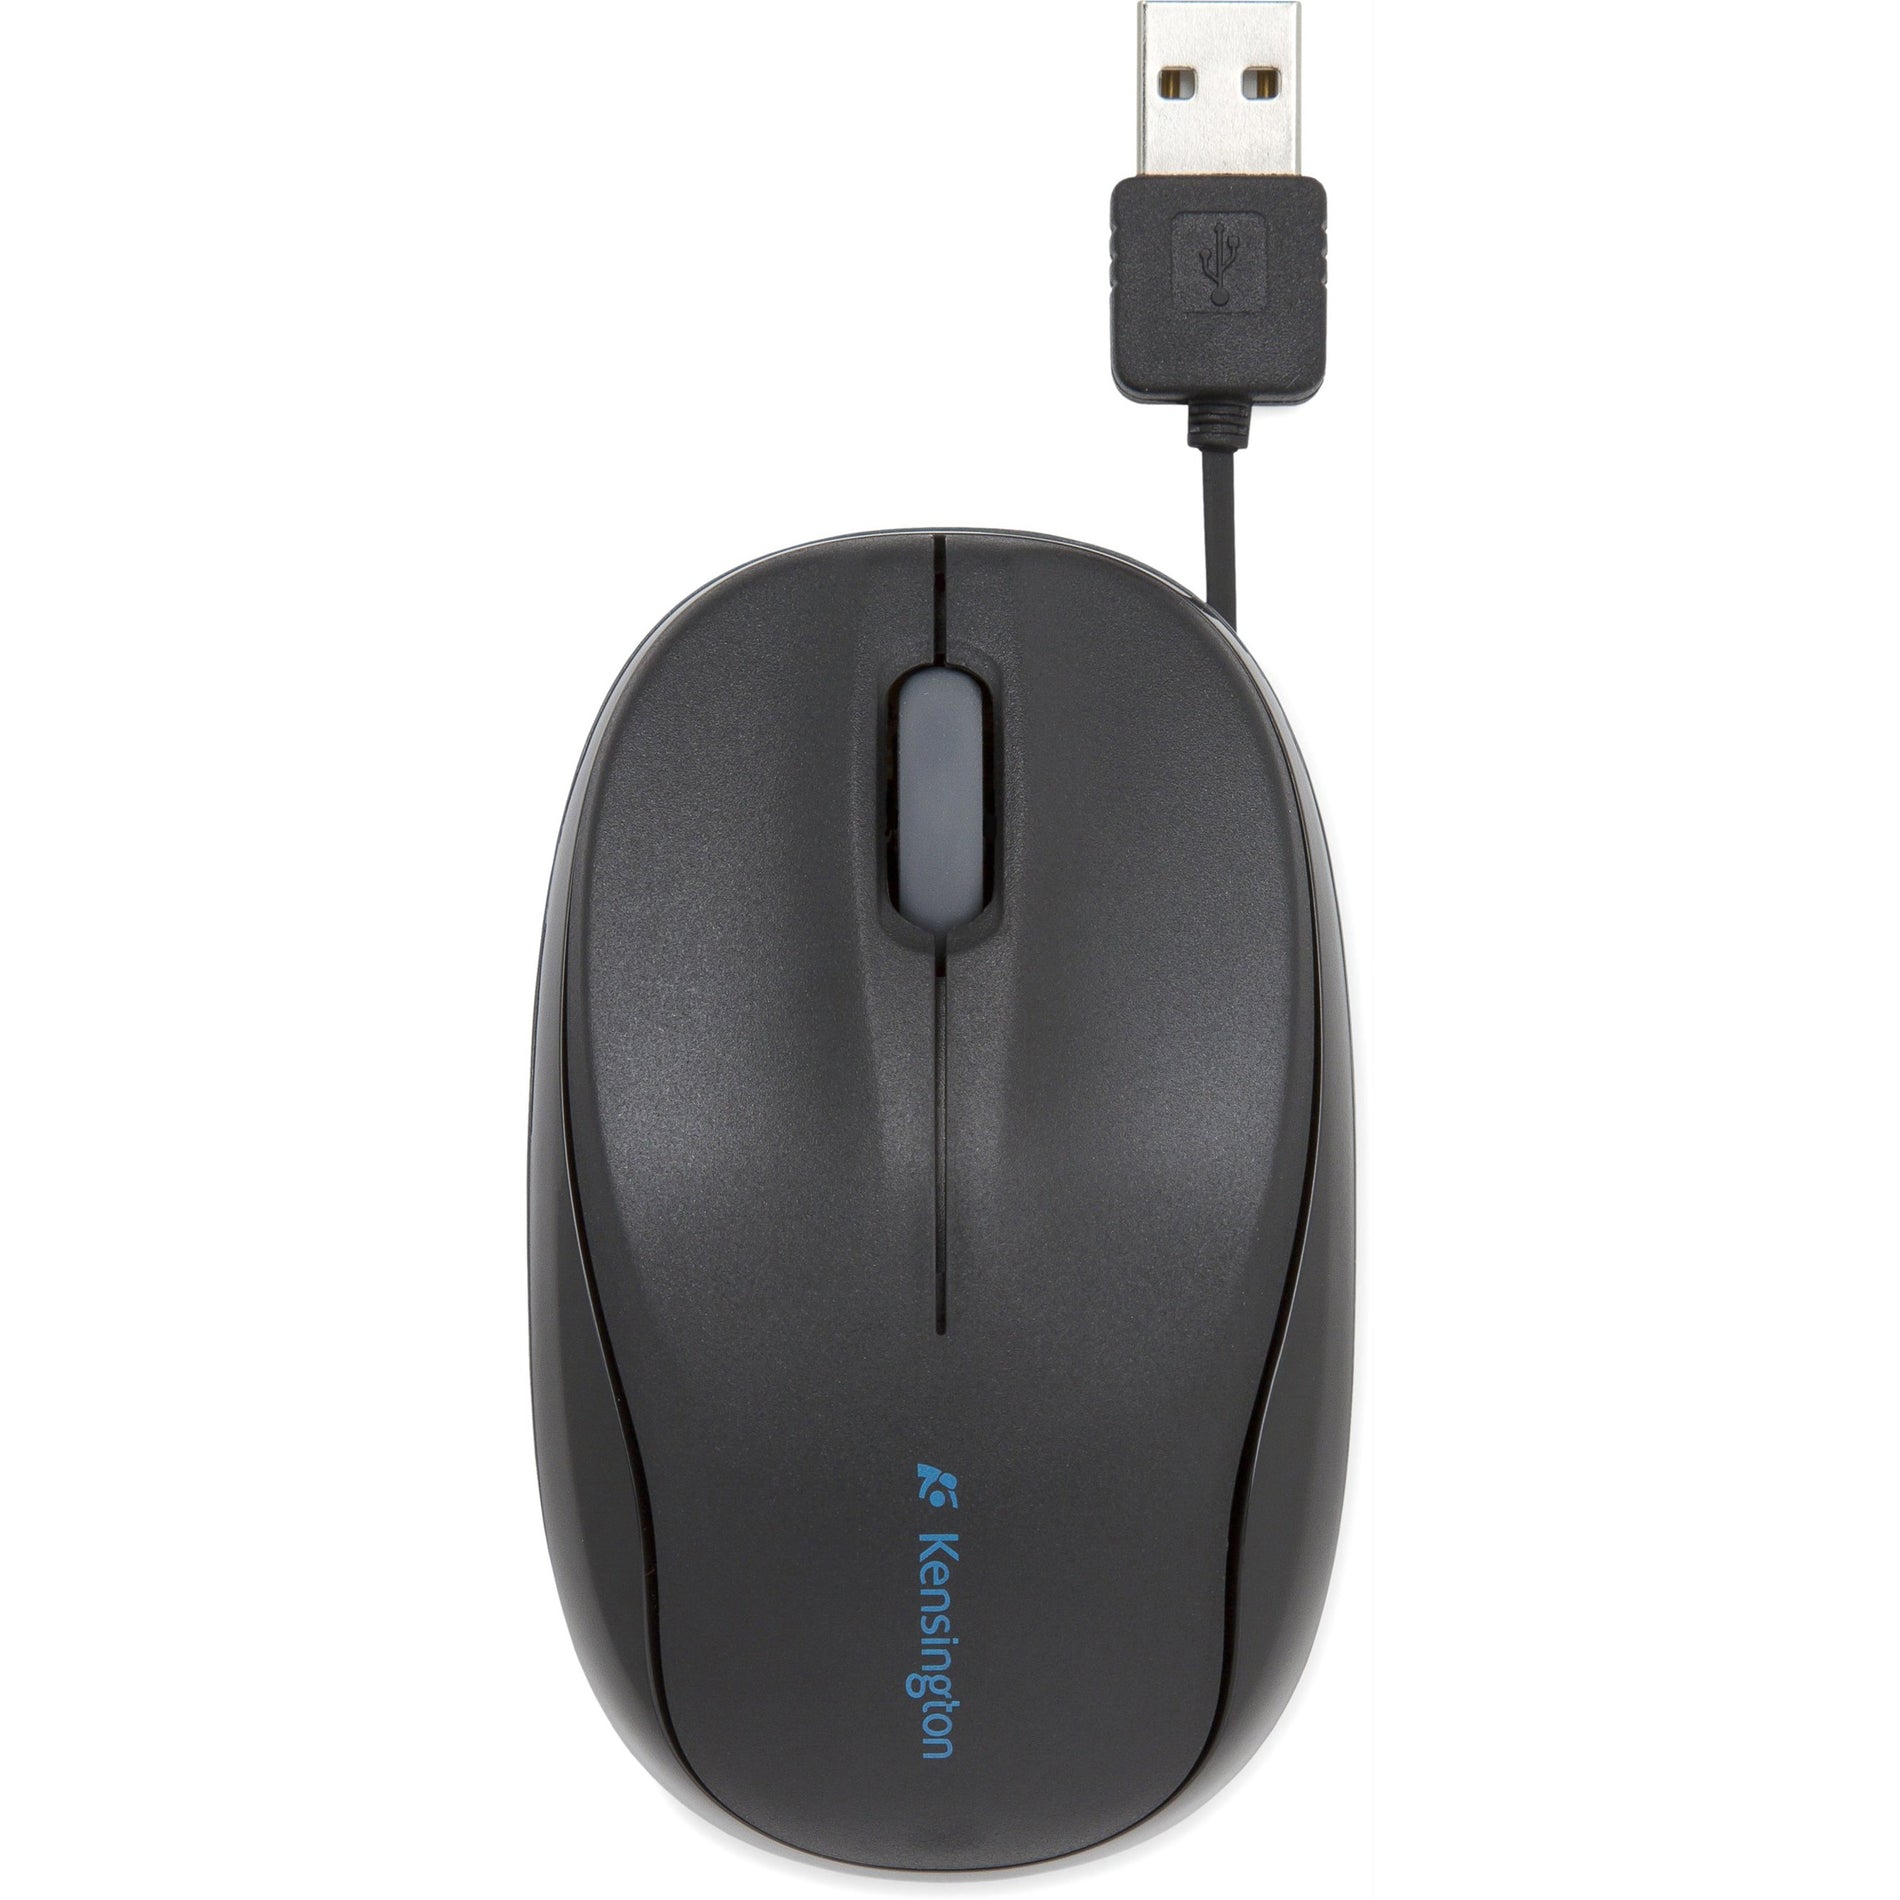 肯辛顿 K72339USA Pro Fit 移动式可伸缩鼠标，黑色 - 2年保修，USB连接 肯辛顿品牌 肯辛顿